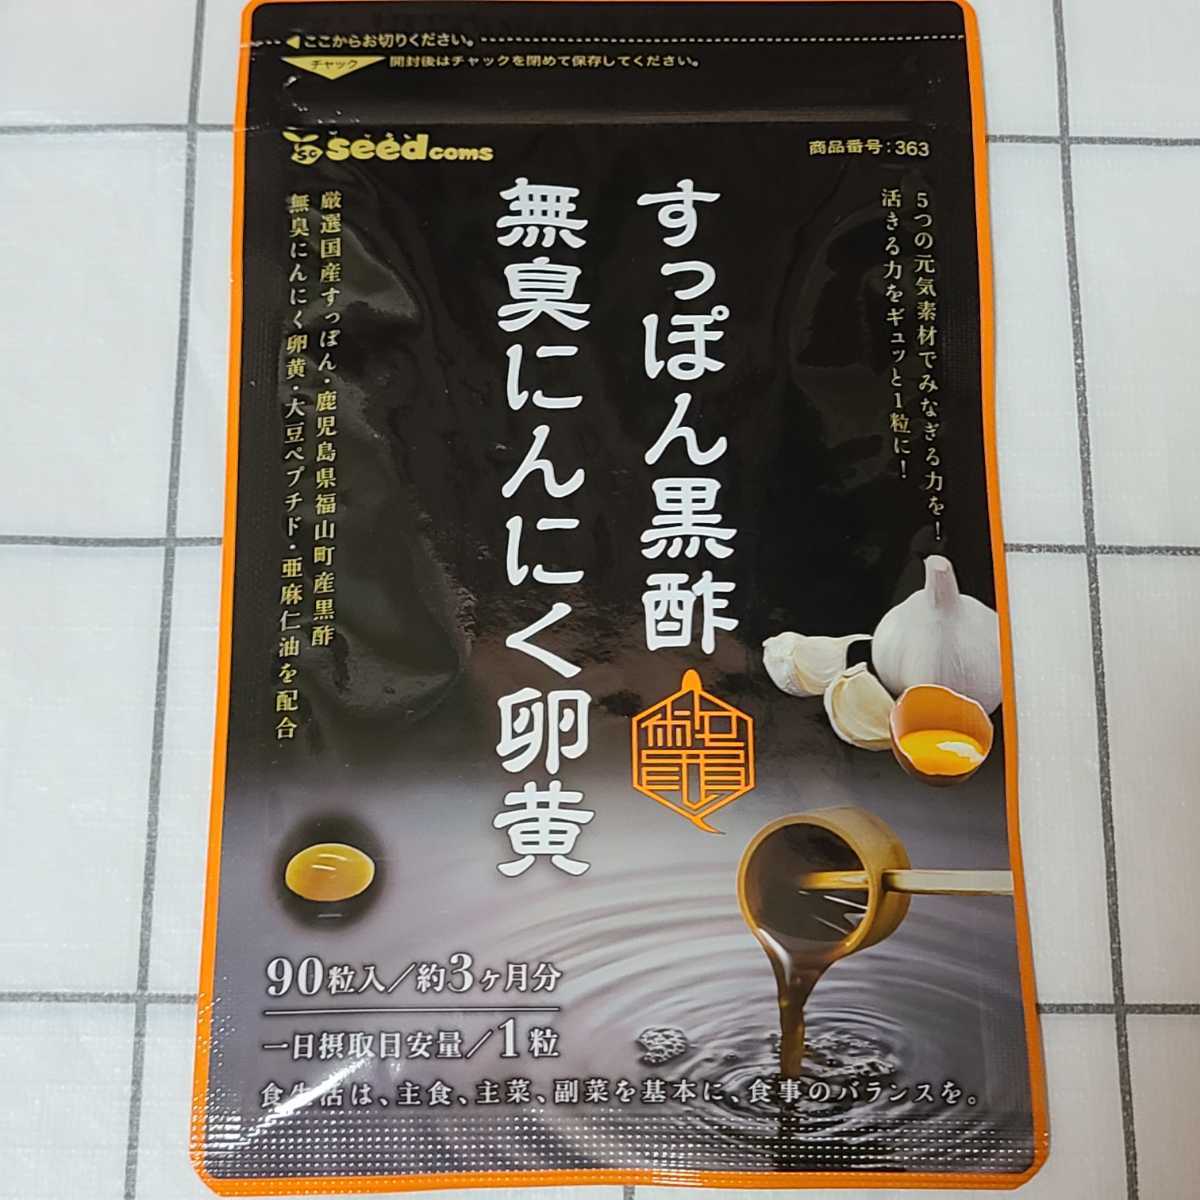 新品 すっぽん黒酢無臭にんにく卵黄 大豆ペプチド シードコムス 3ヶ月分 通販